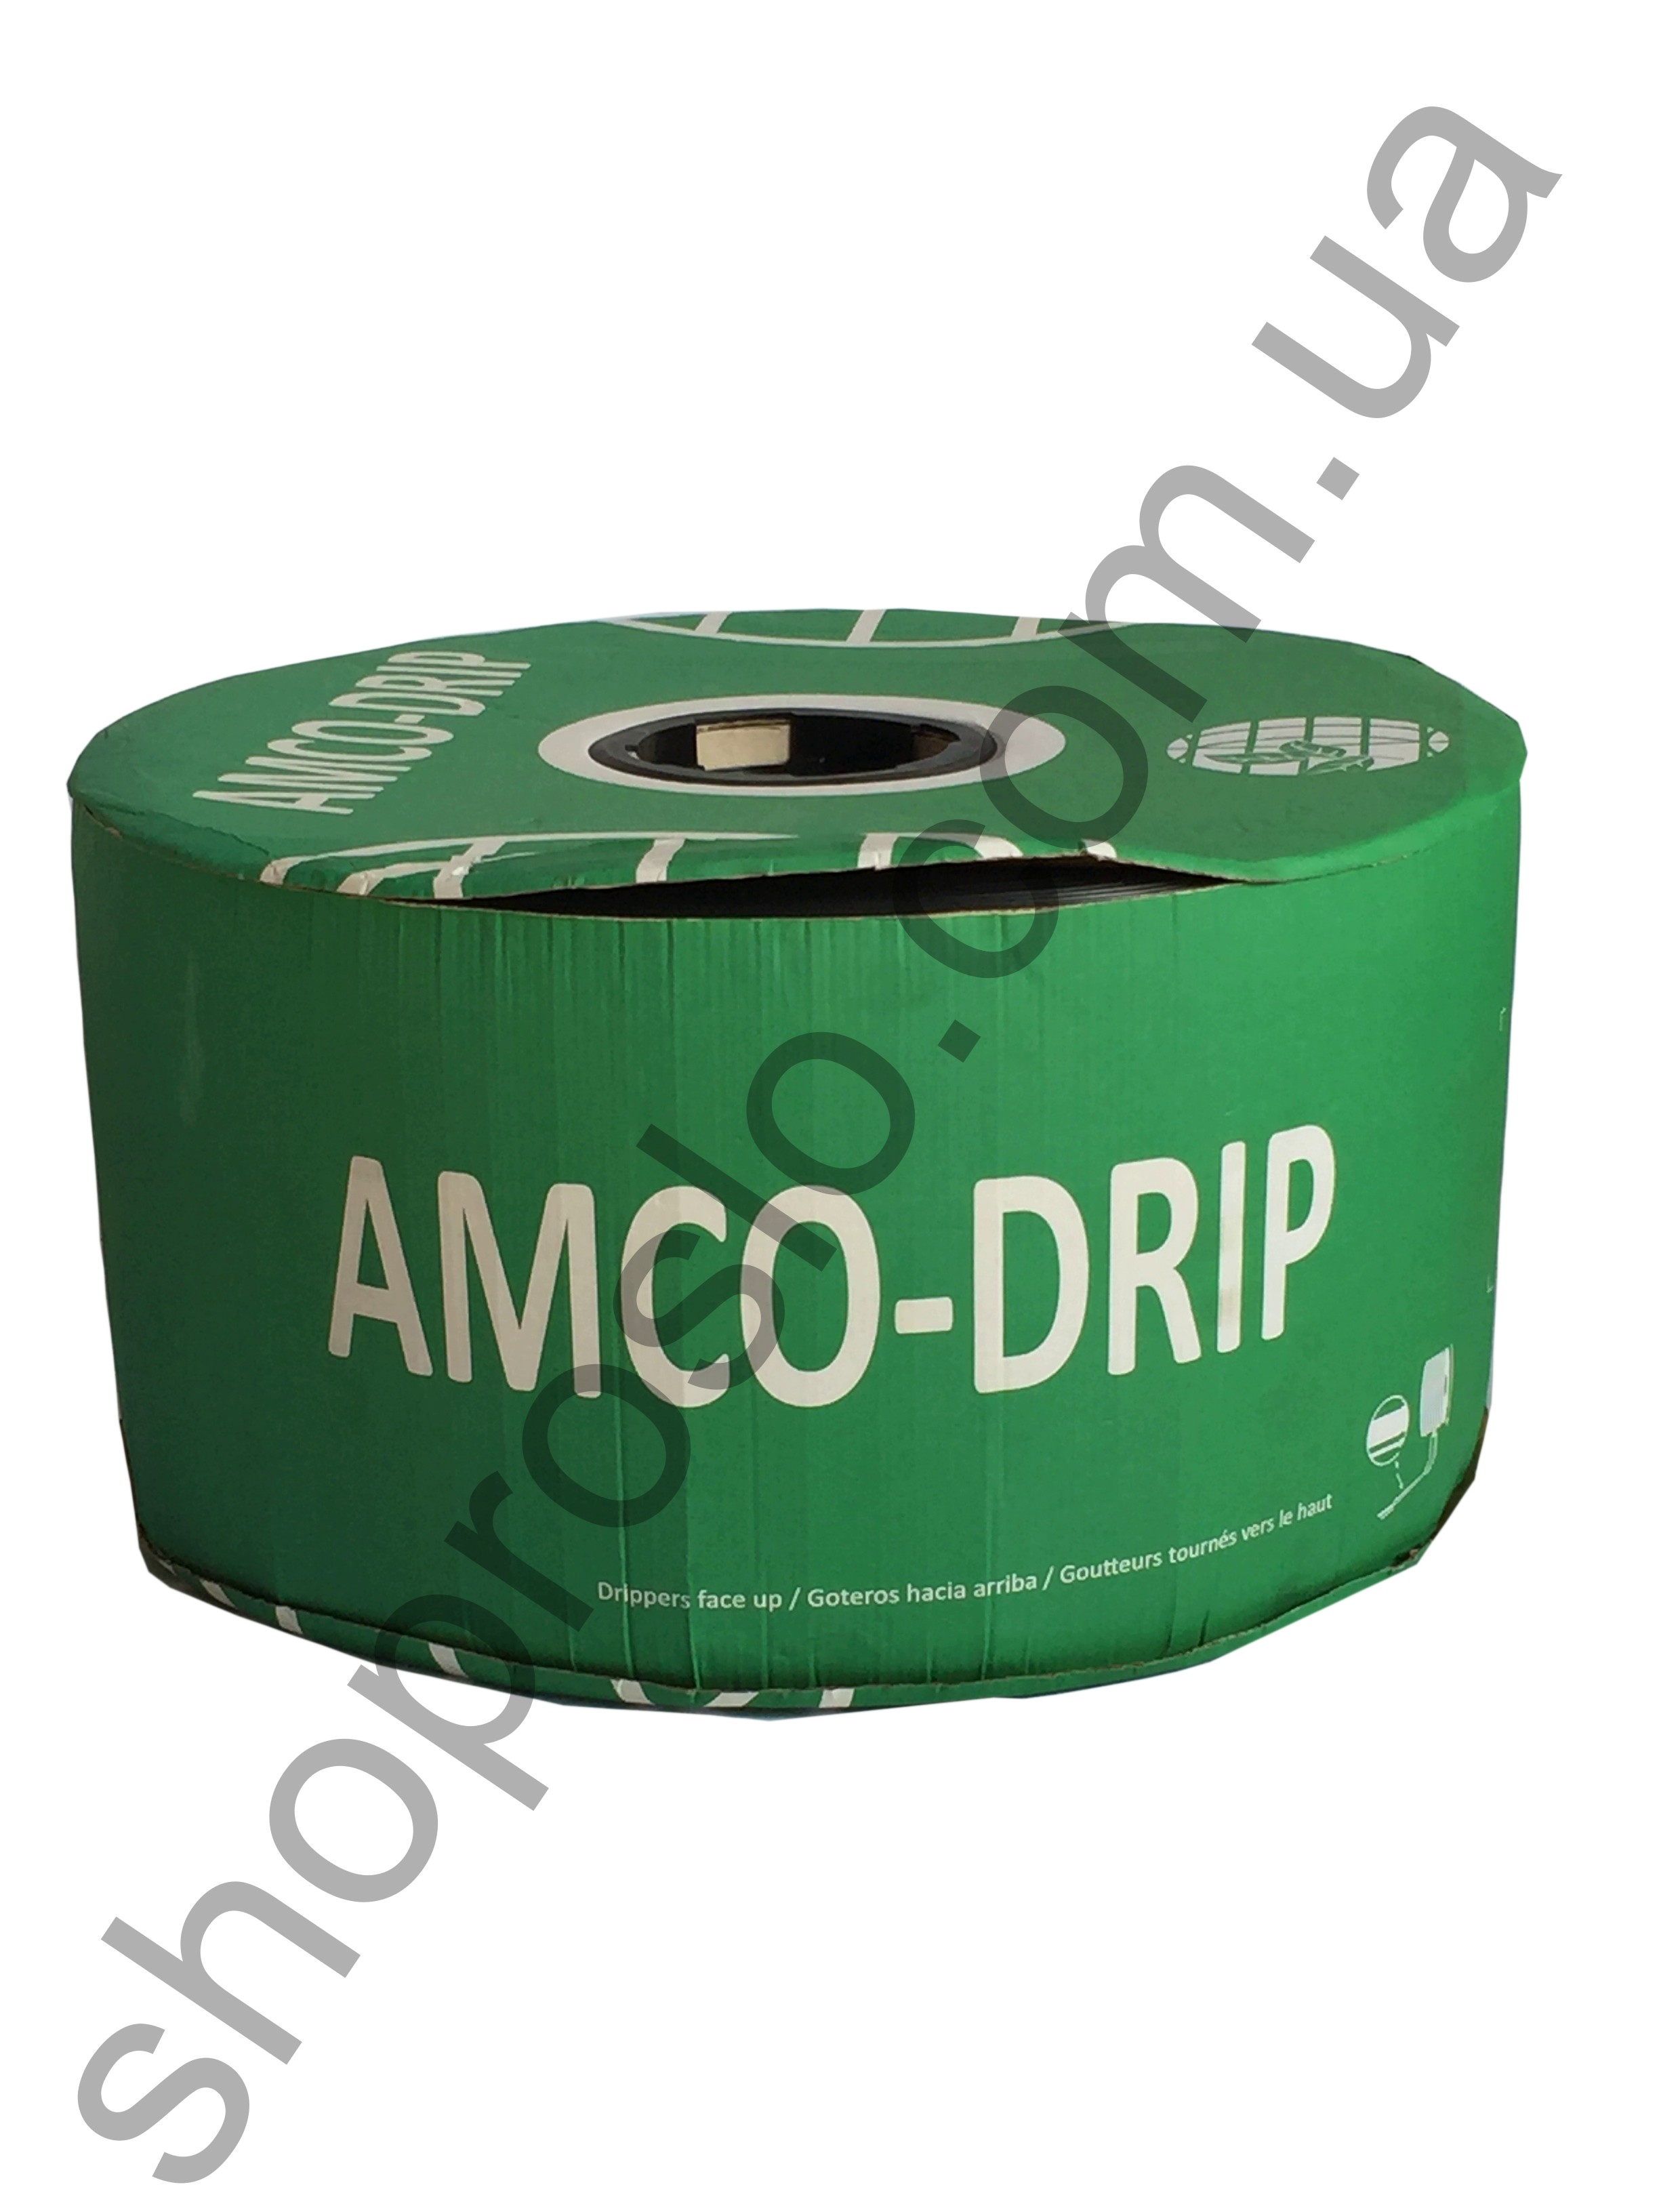 Крапельна стрічка 6 mil/20 см, водовилив 1,0 л/г, щілинна, 3050 м. "Amco-drip" (Франція)